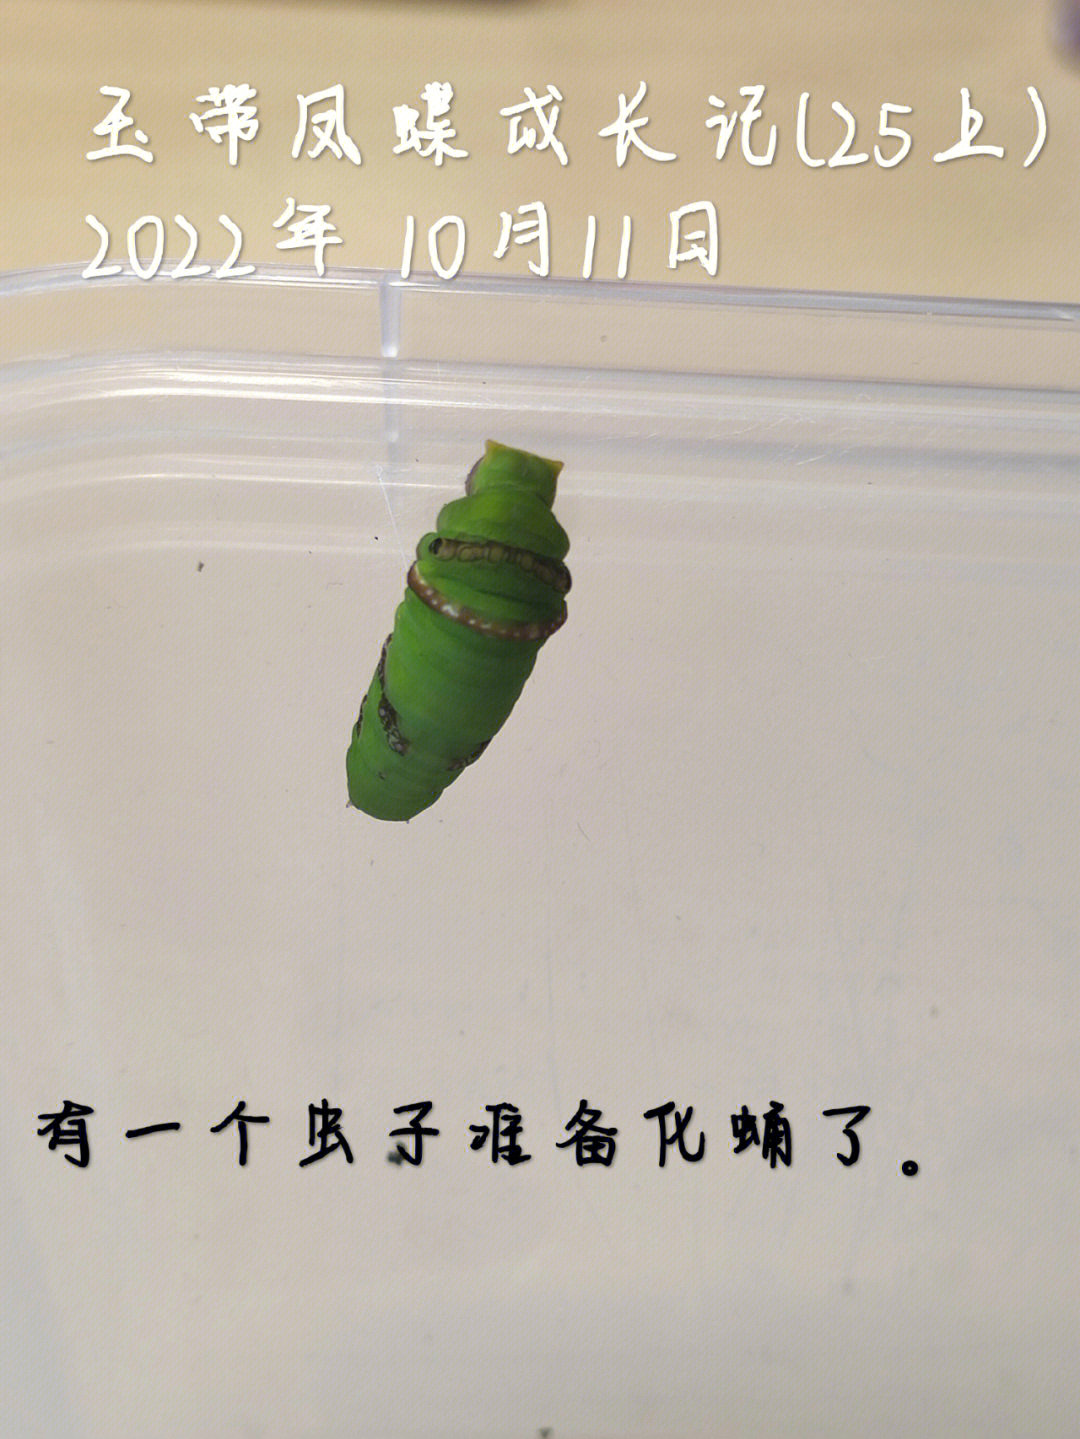 玉带凤蝶化蛹图片